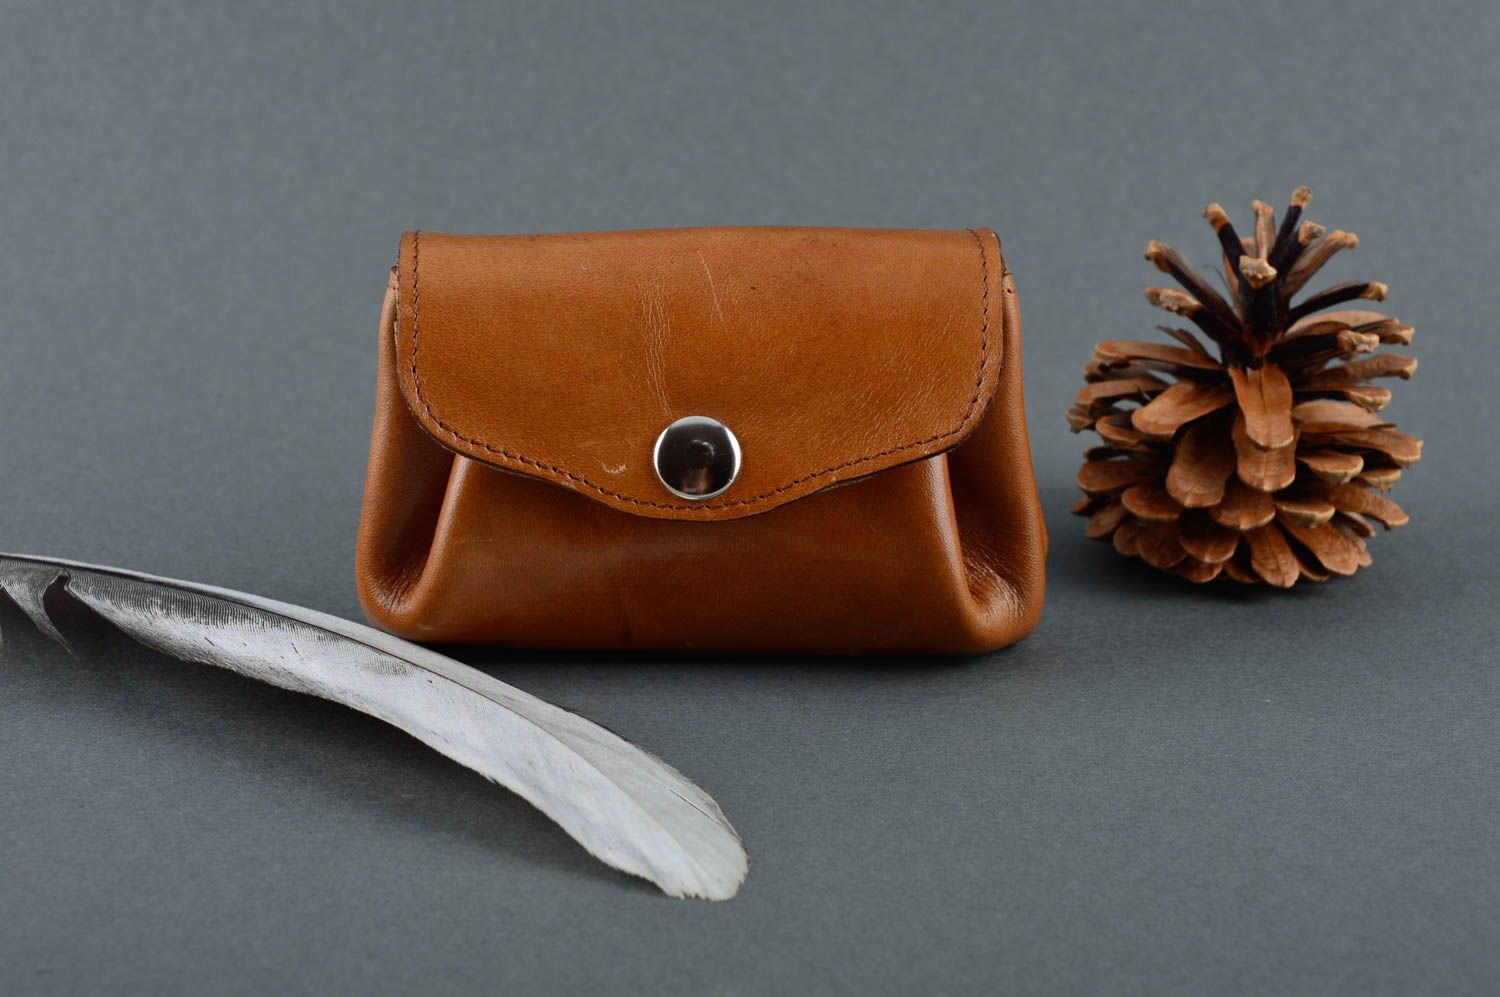 Кожаный кошелек ручной работы аксессуар из кожи красивый подарок женщине фото 1